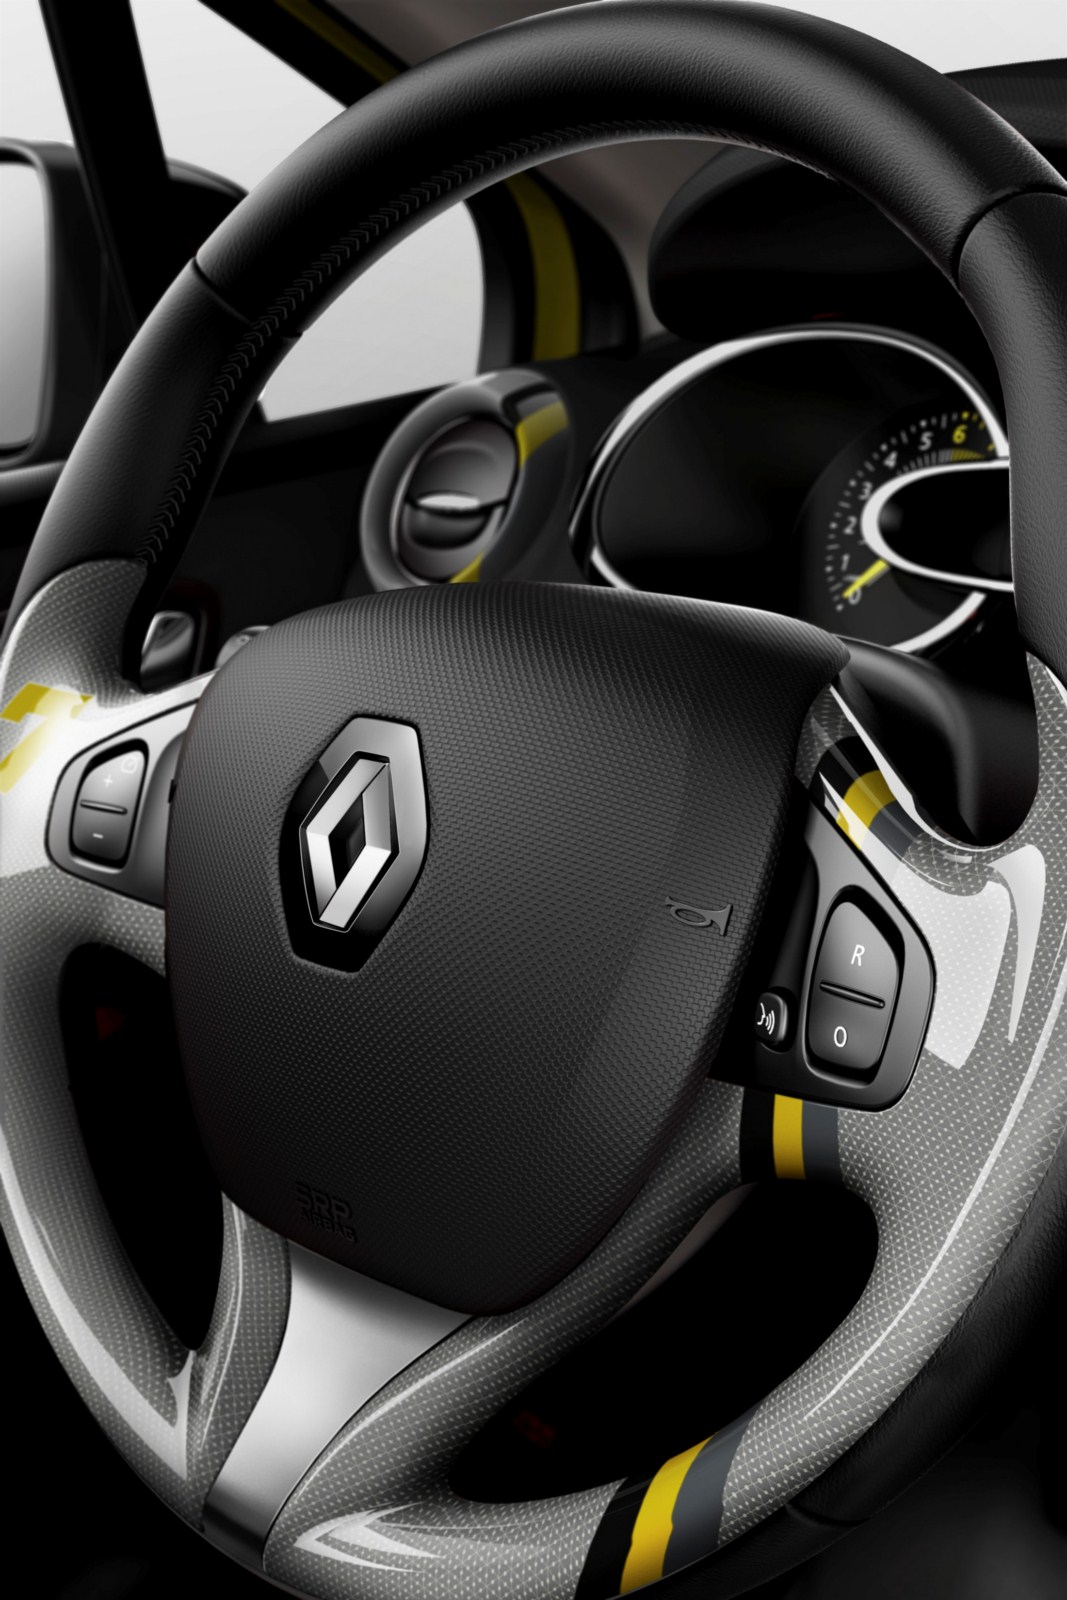 Επίσημο Renault Clio 2013 [w/video] Autoblog.gr